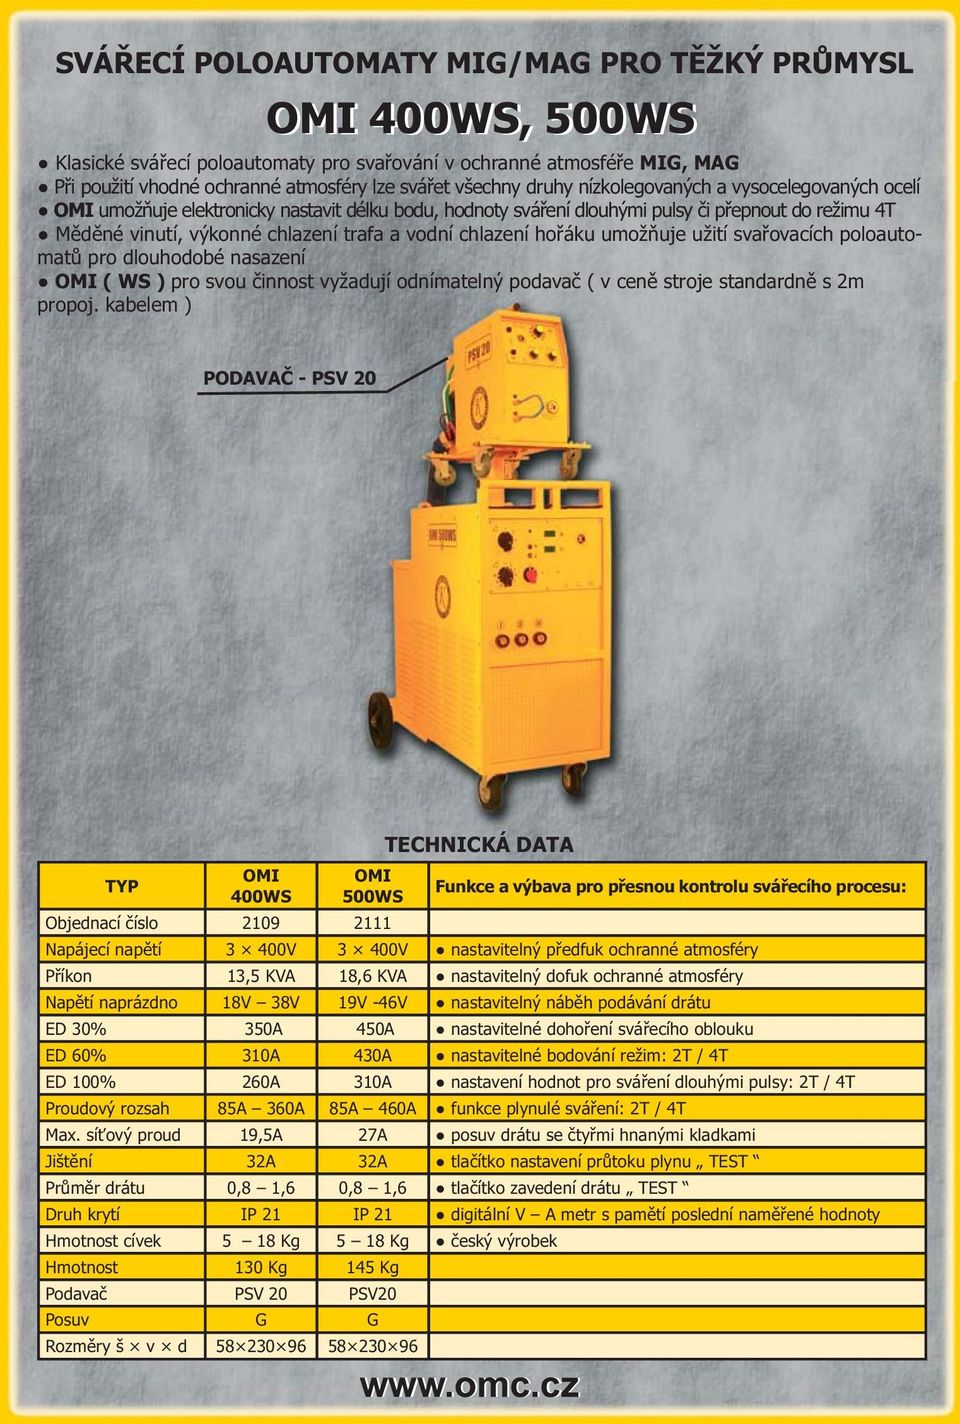 chlazení hořáku umožňuje užití svařovacích poloautomatů pro dlouhodobé nasazení OMI ( WS ) pro svou činnost vyžadují odnímatelný podavač ( v ceně stroje standardně s 2m propoj.